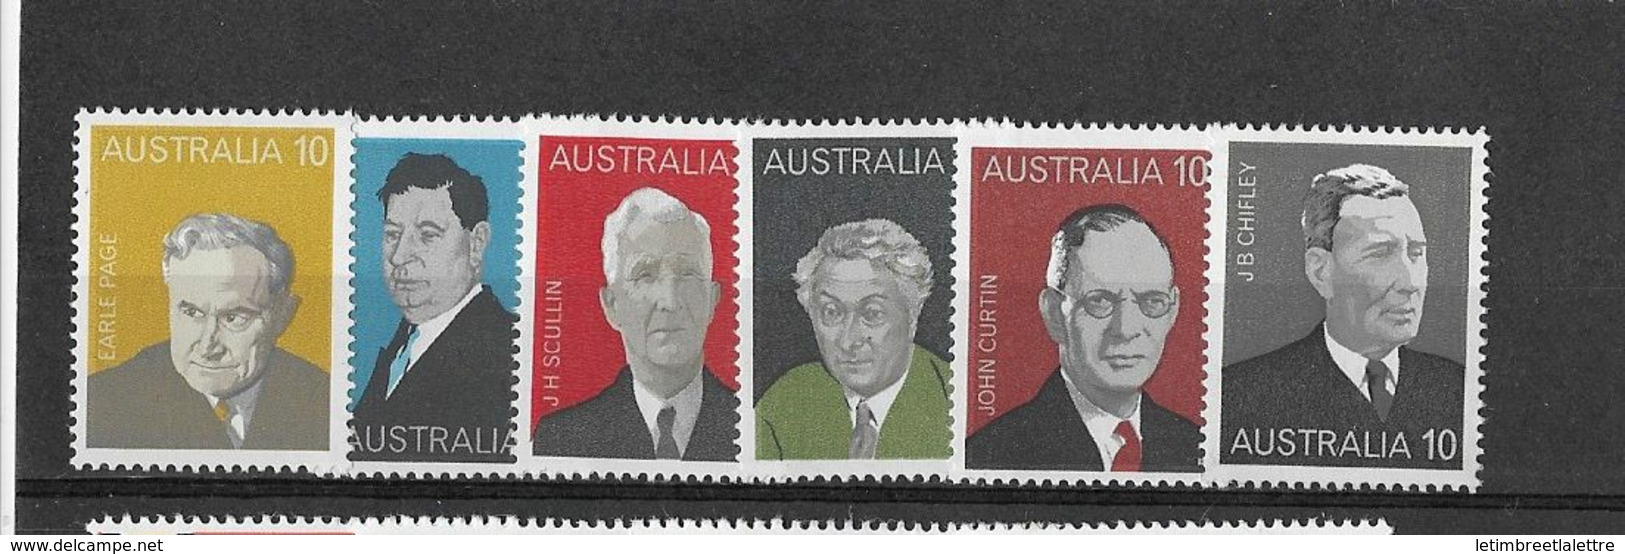 Australie N 558 à 563**                                                                                 ** - Mint Stamps